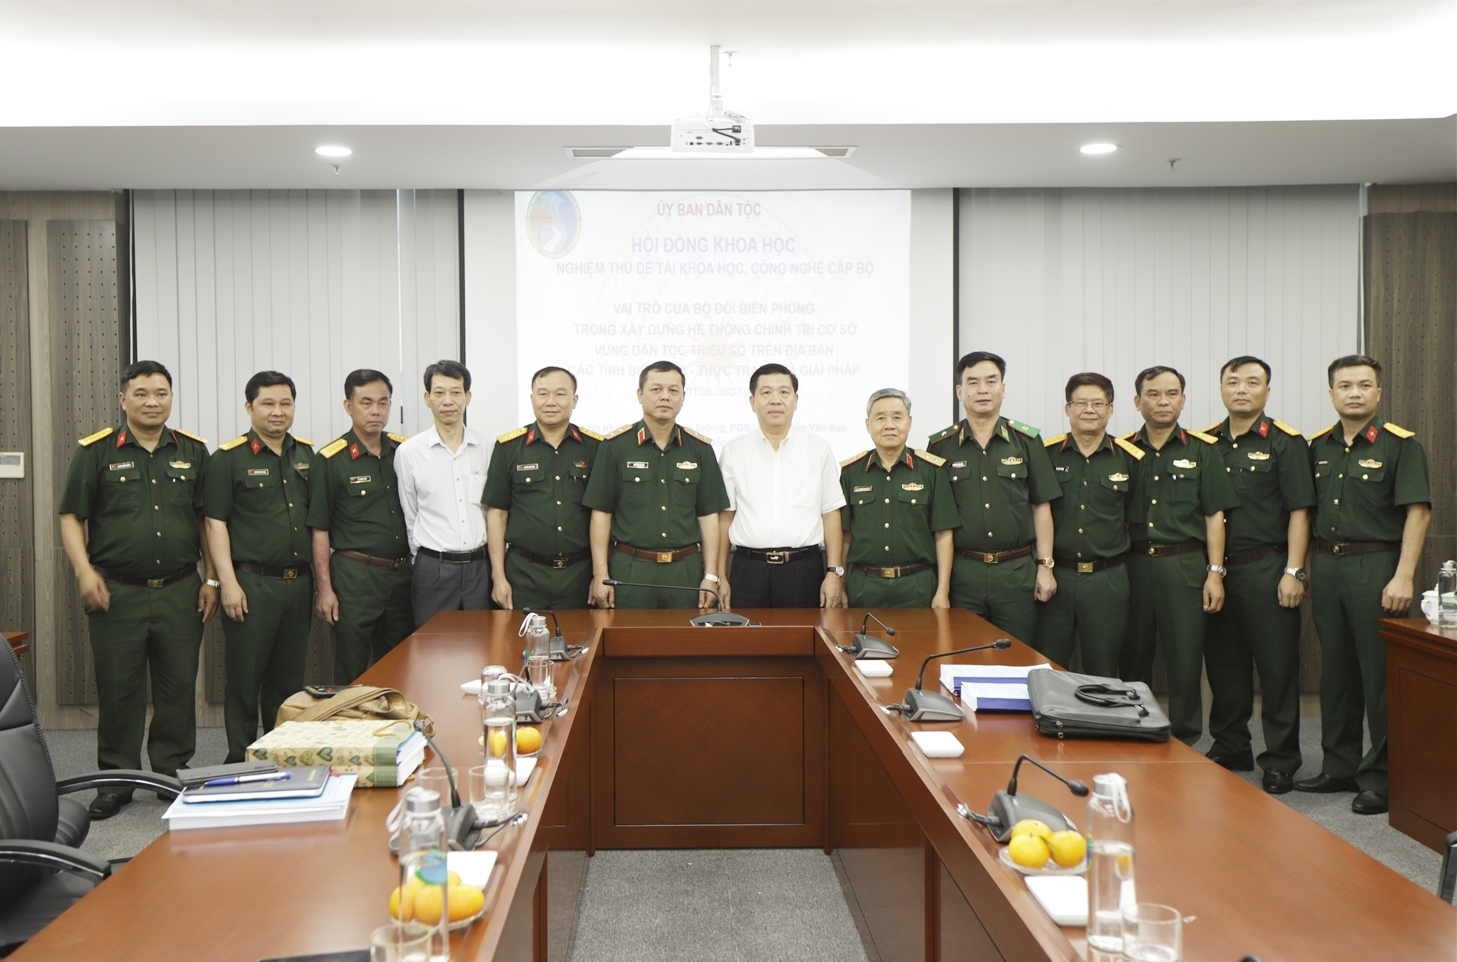 Thứ trưởng, Phó Chủ nhiệm UBDT Lê Sơn Hải chụp ảnh lưu niệm cùng Hội đồng nghiệm thu và nhóm nghiên cứu